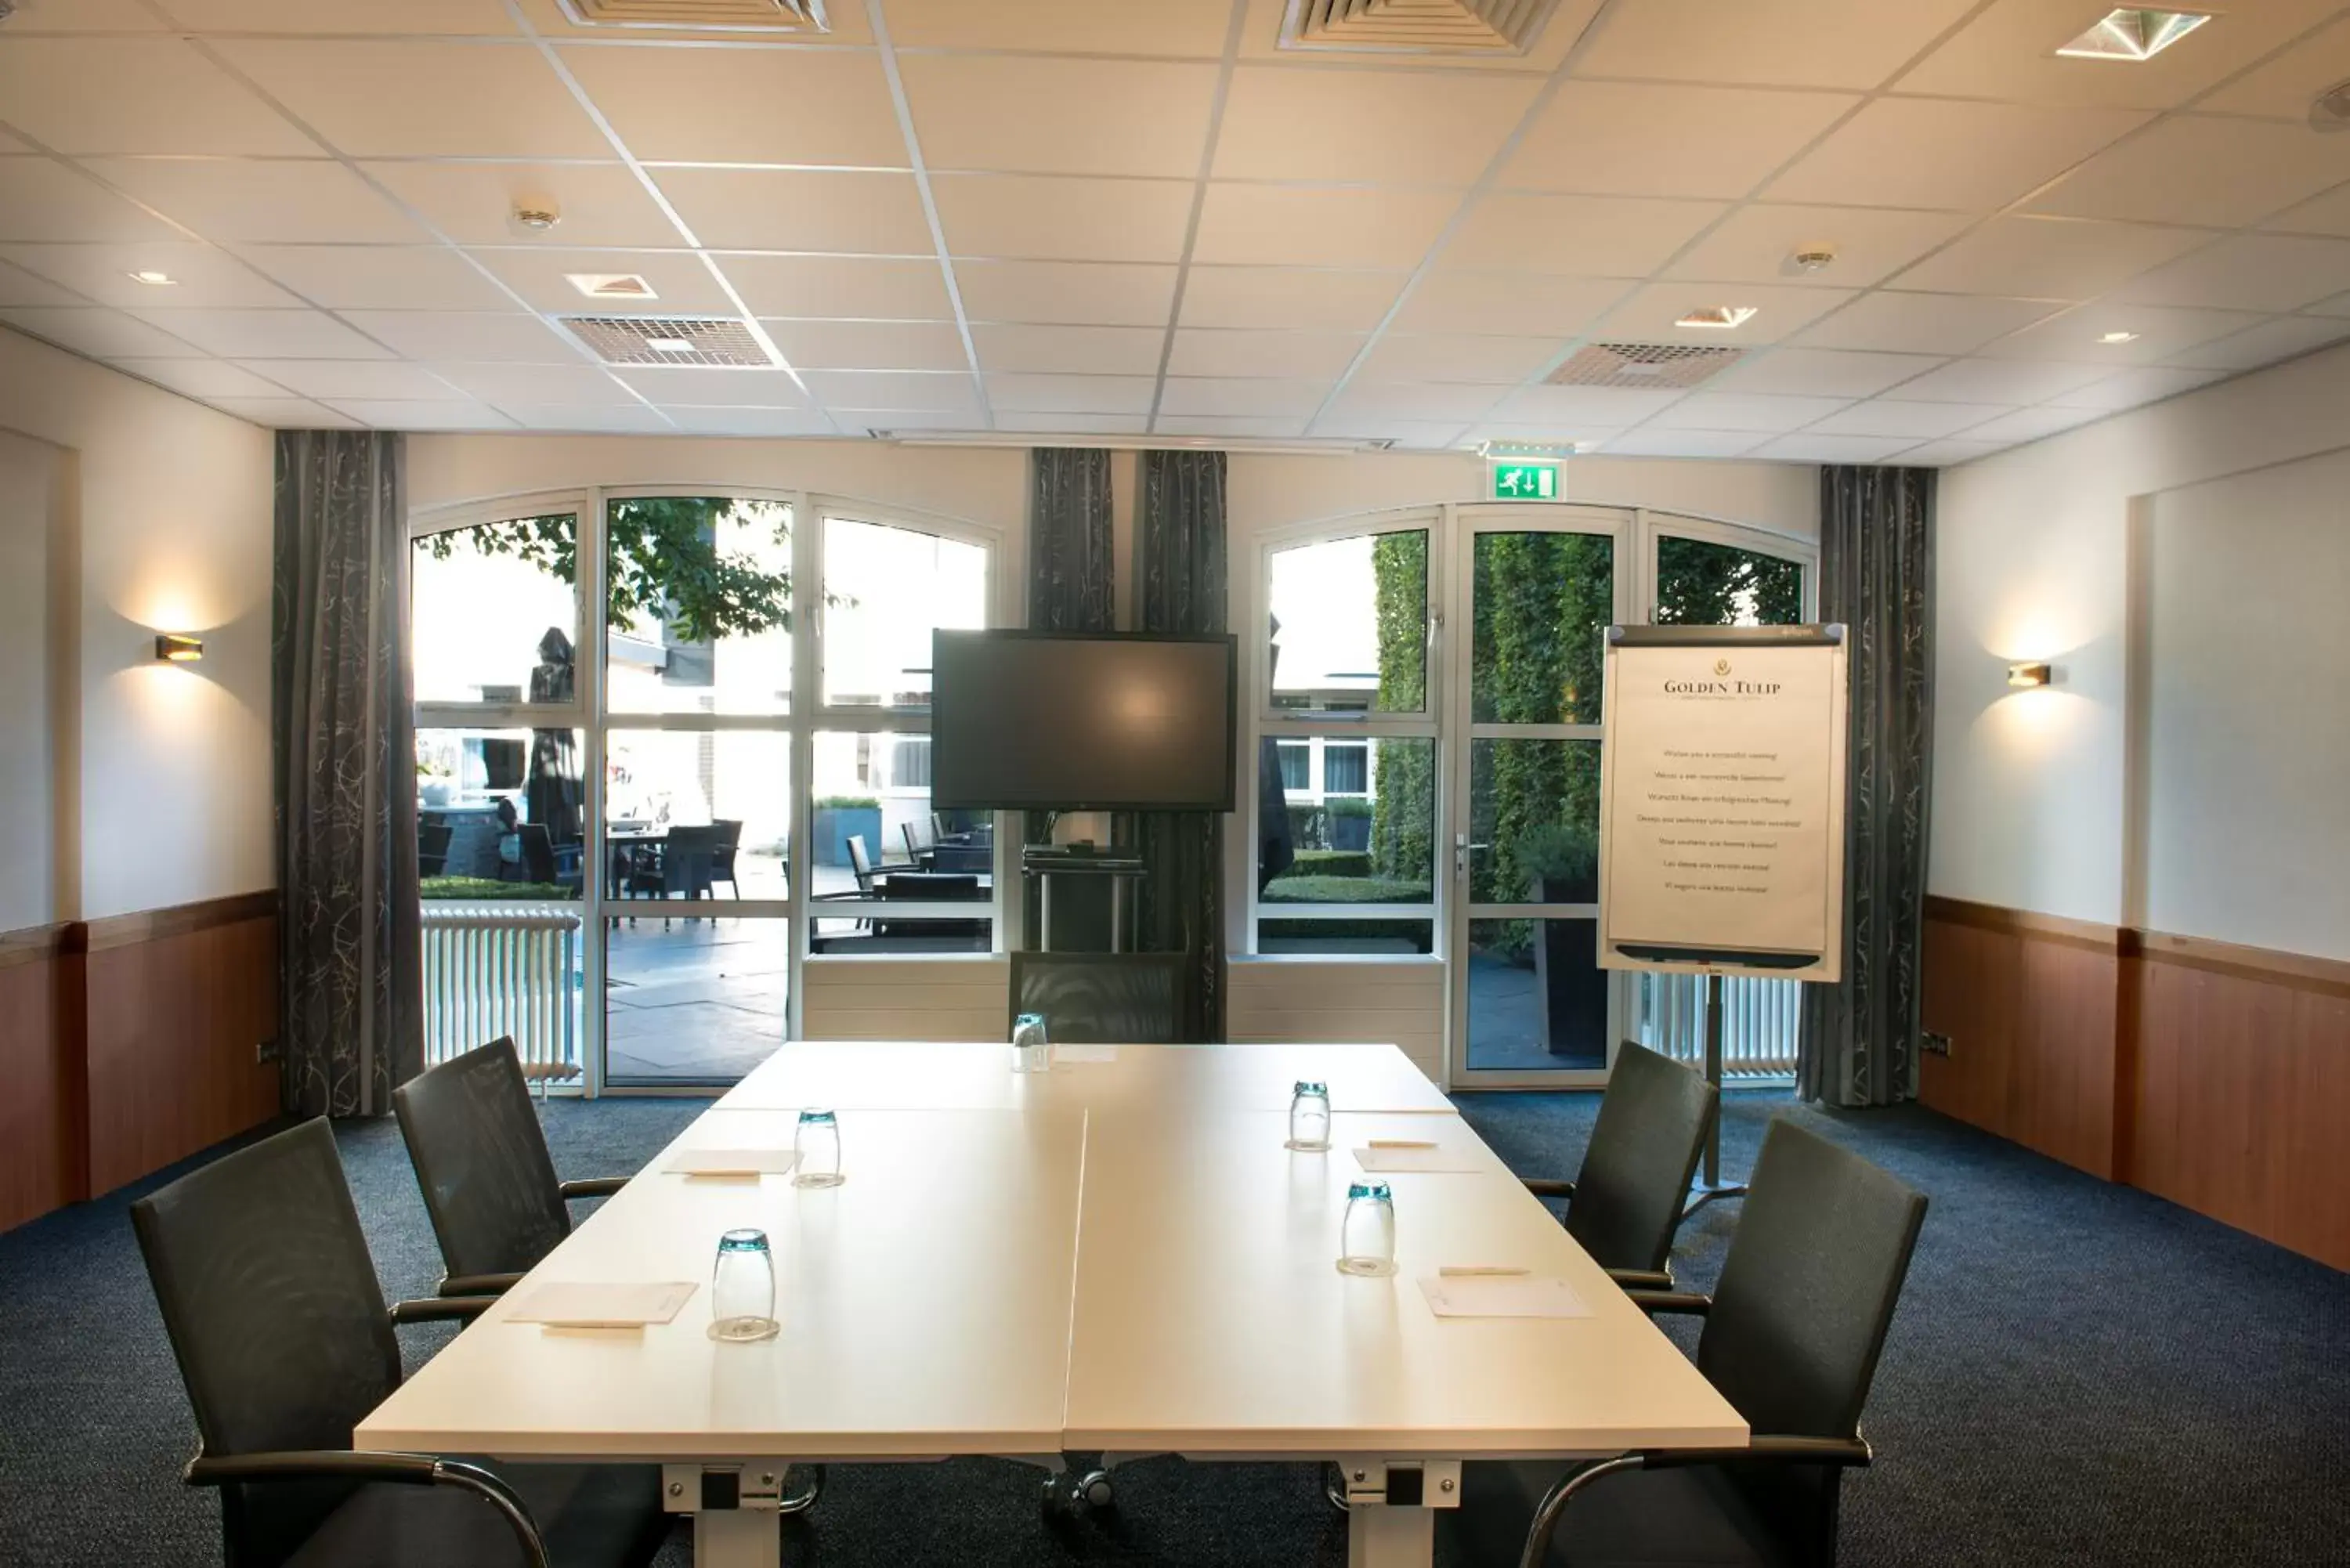 Meeting/conference room in Golden Tulip Ampt van Nijkerk